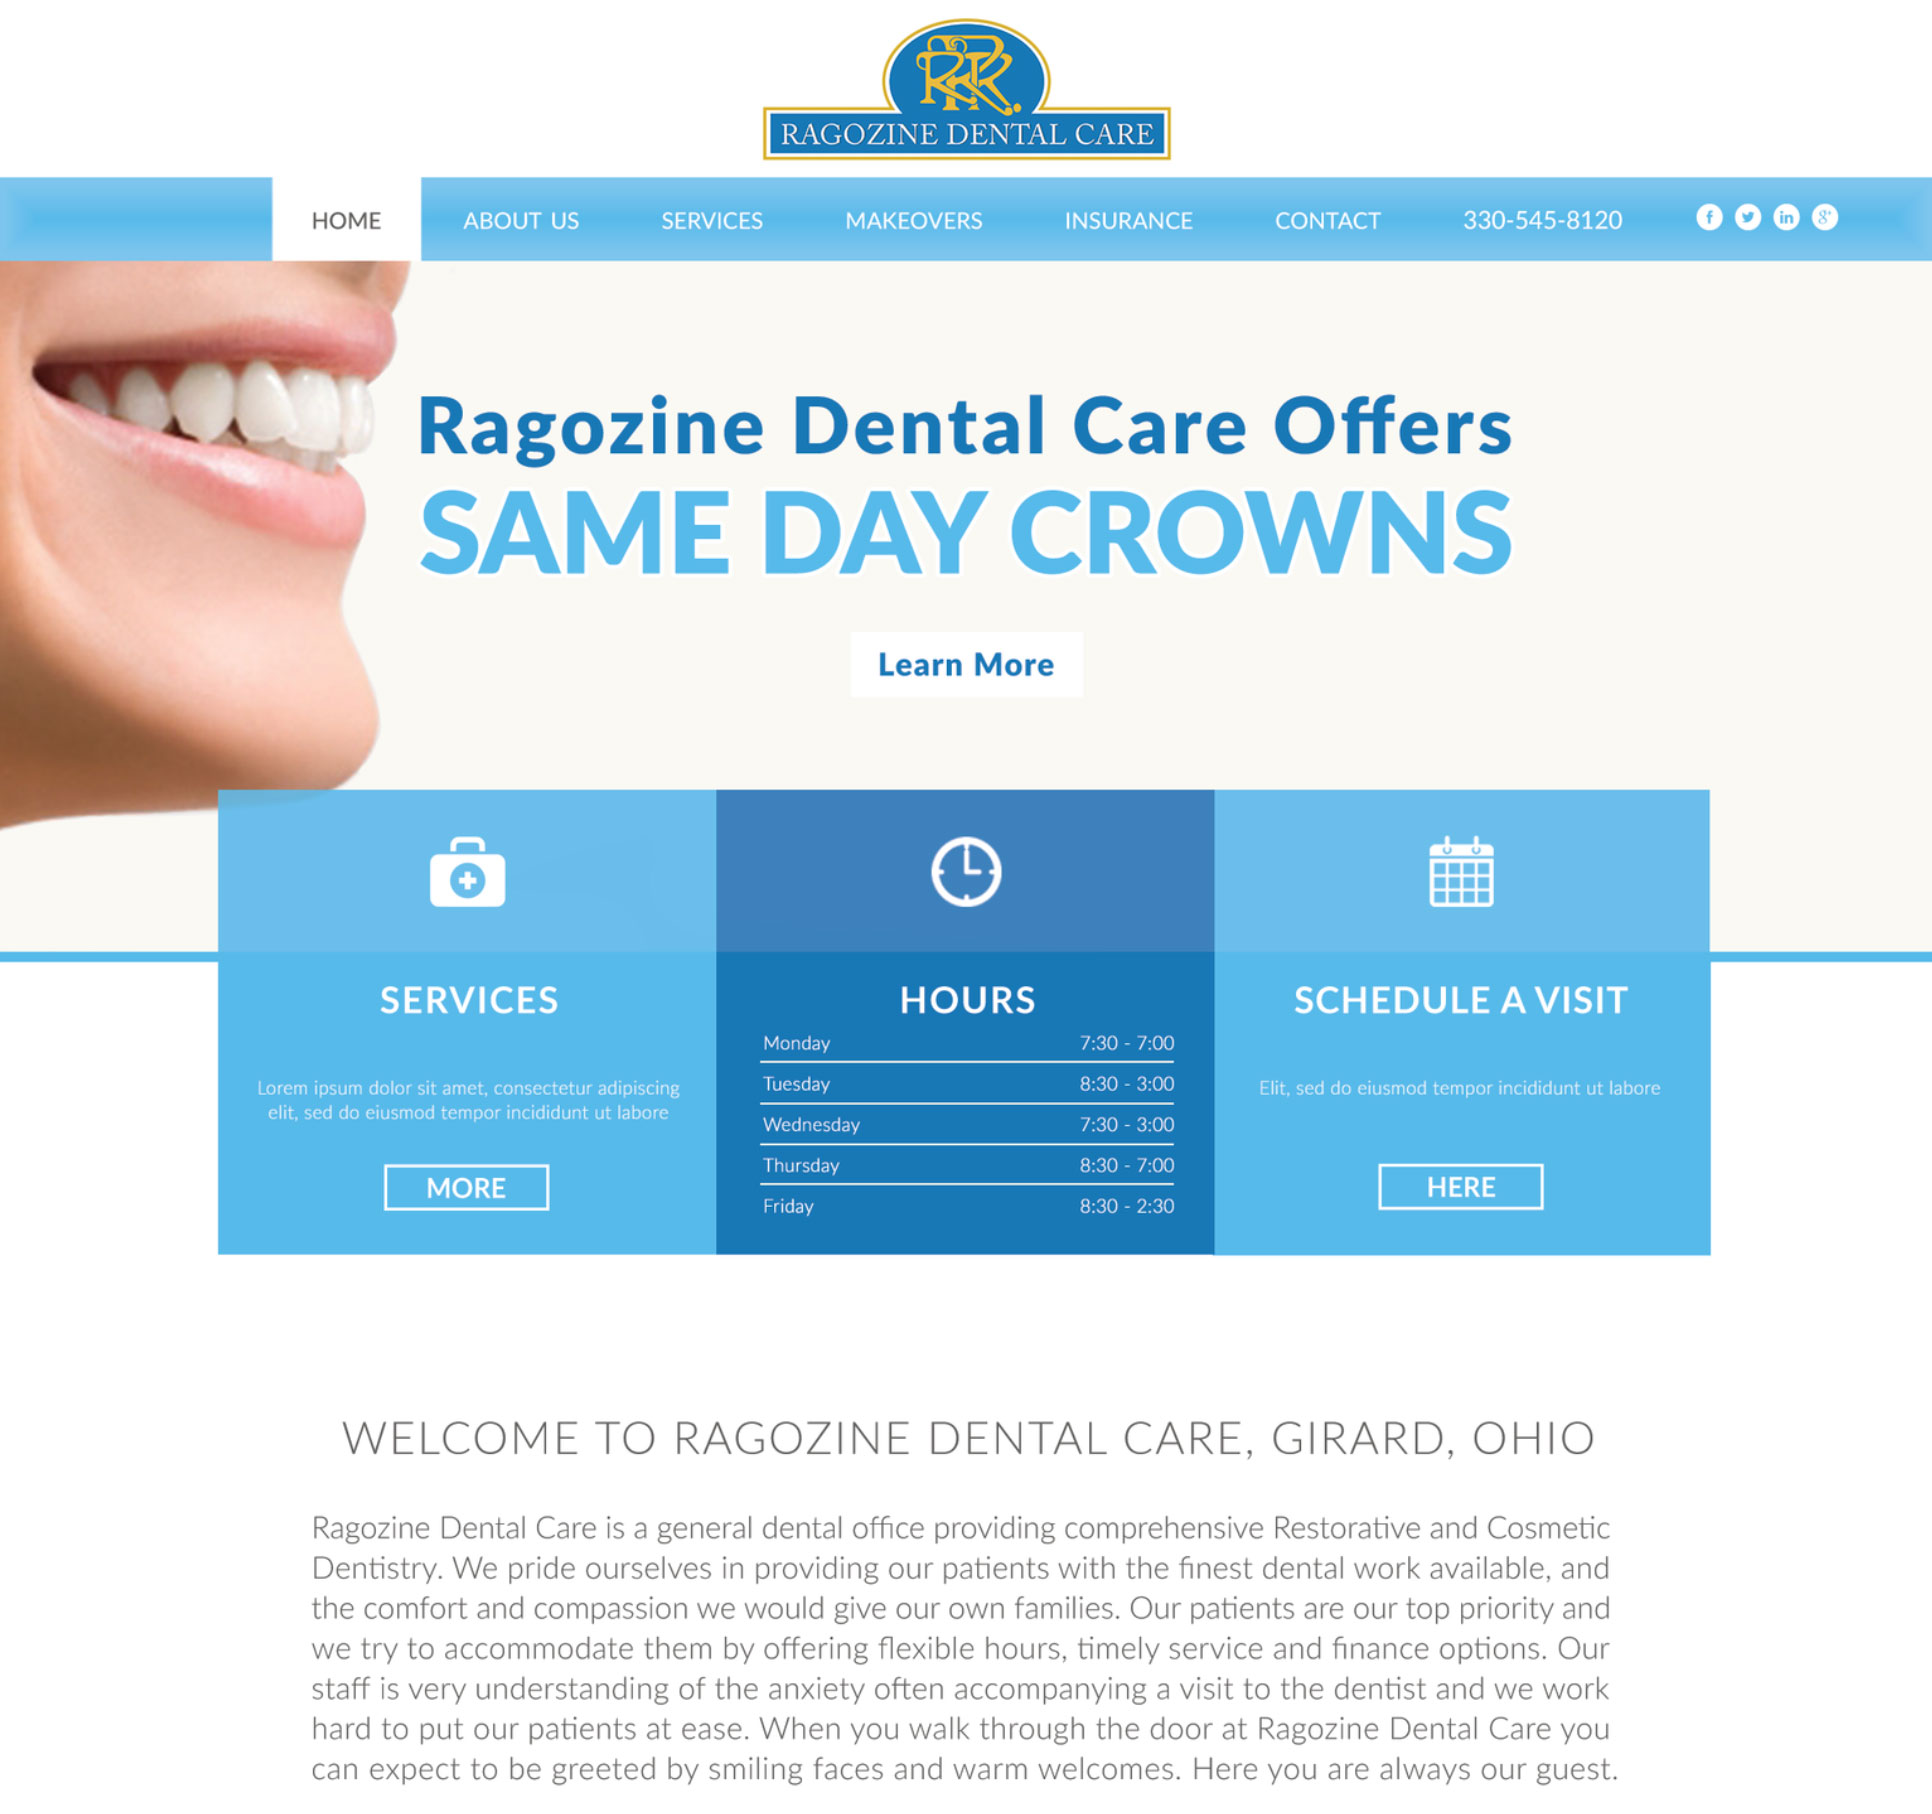 Ragozine Dental Care Image